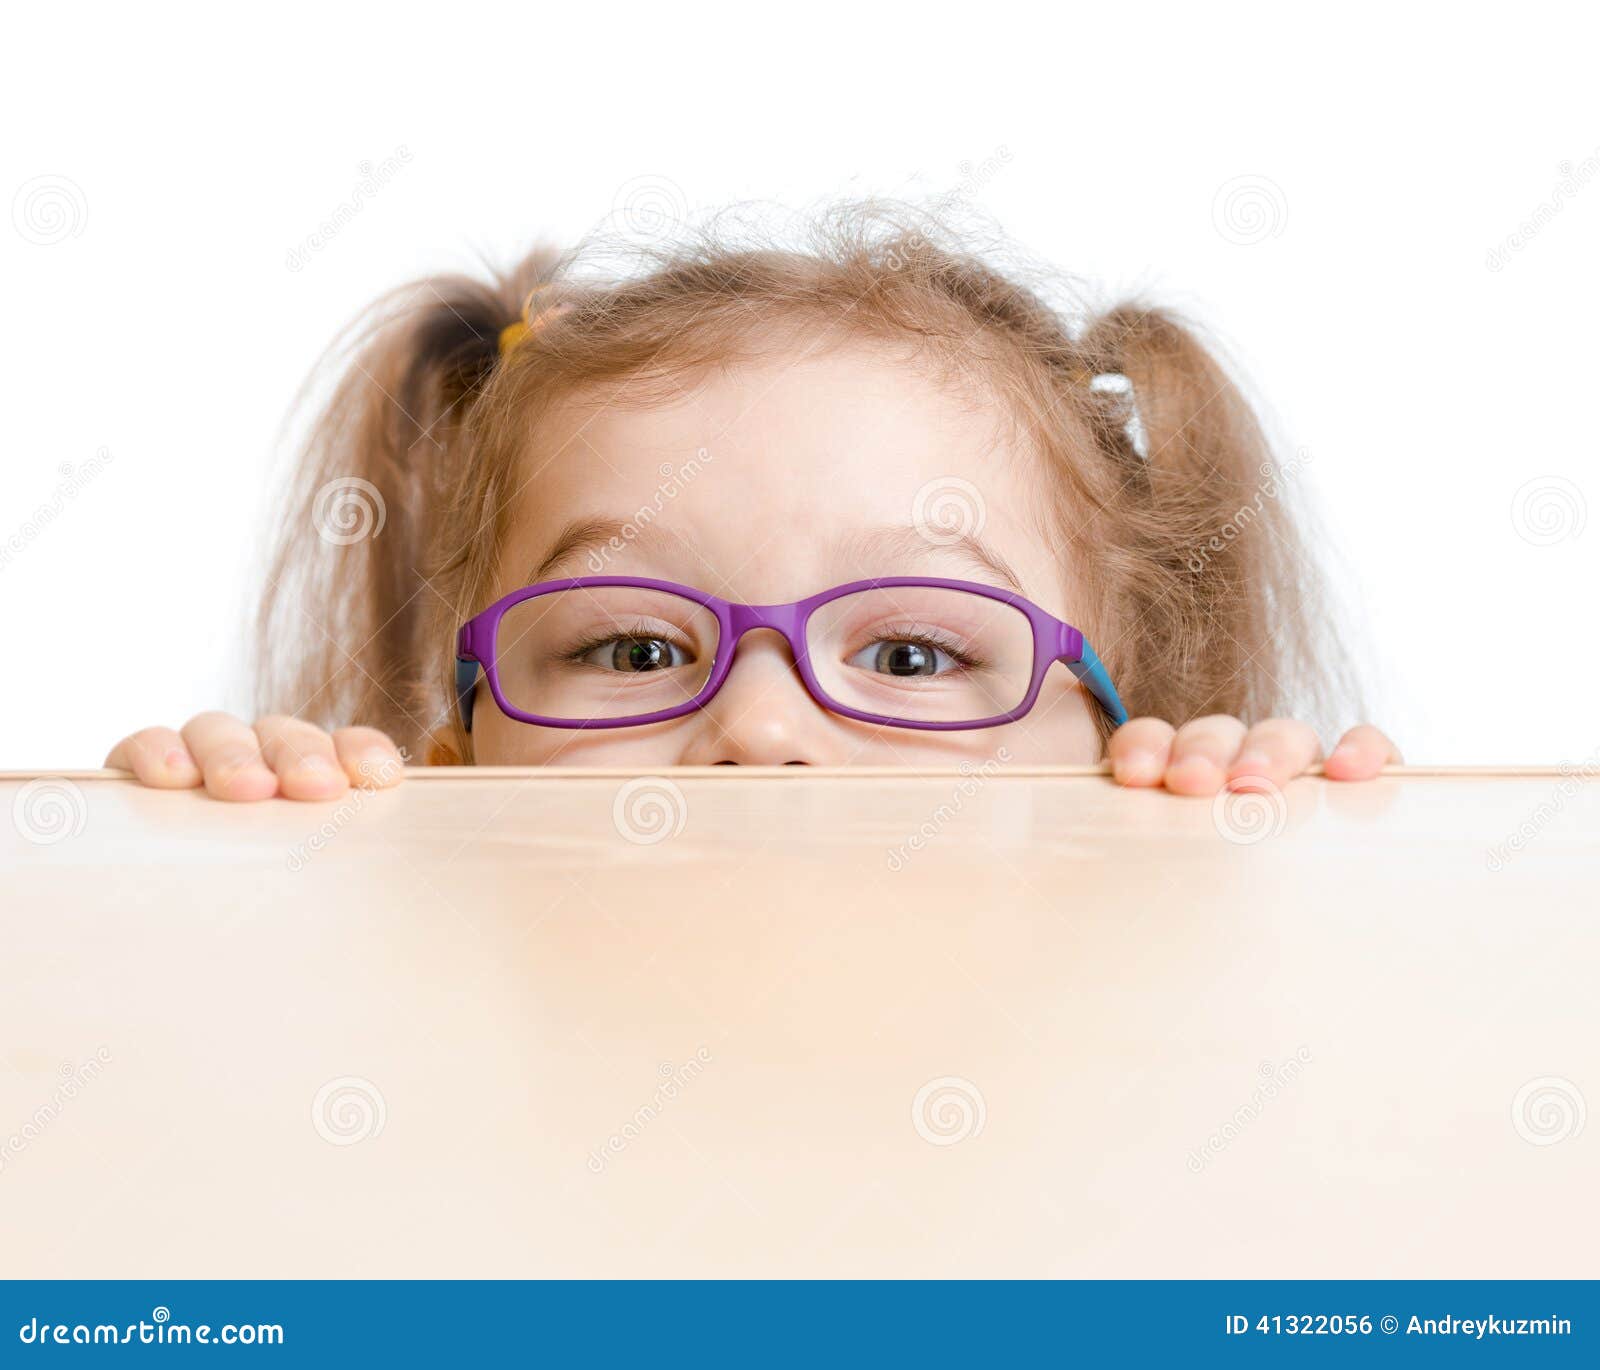 funny girl in eyeglasses hiding behind table